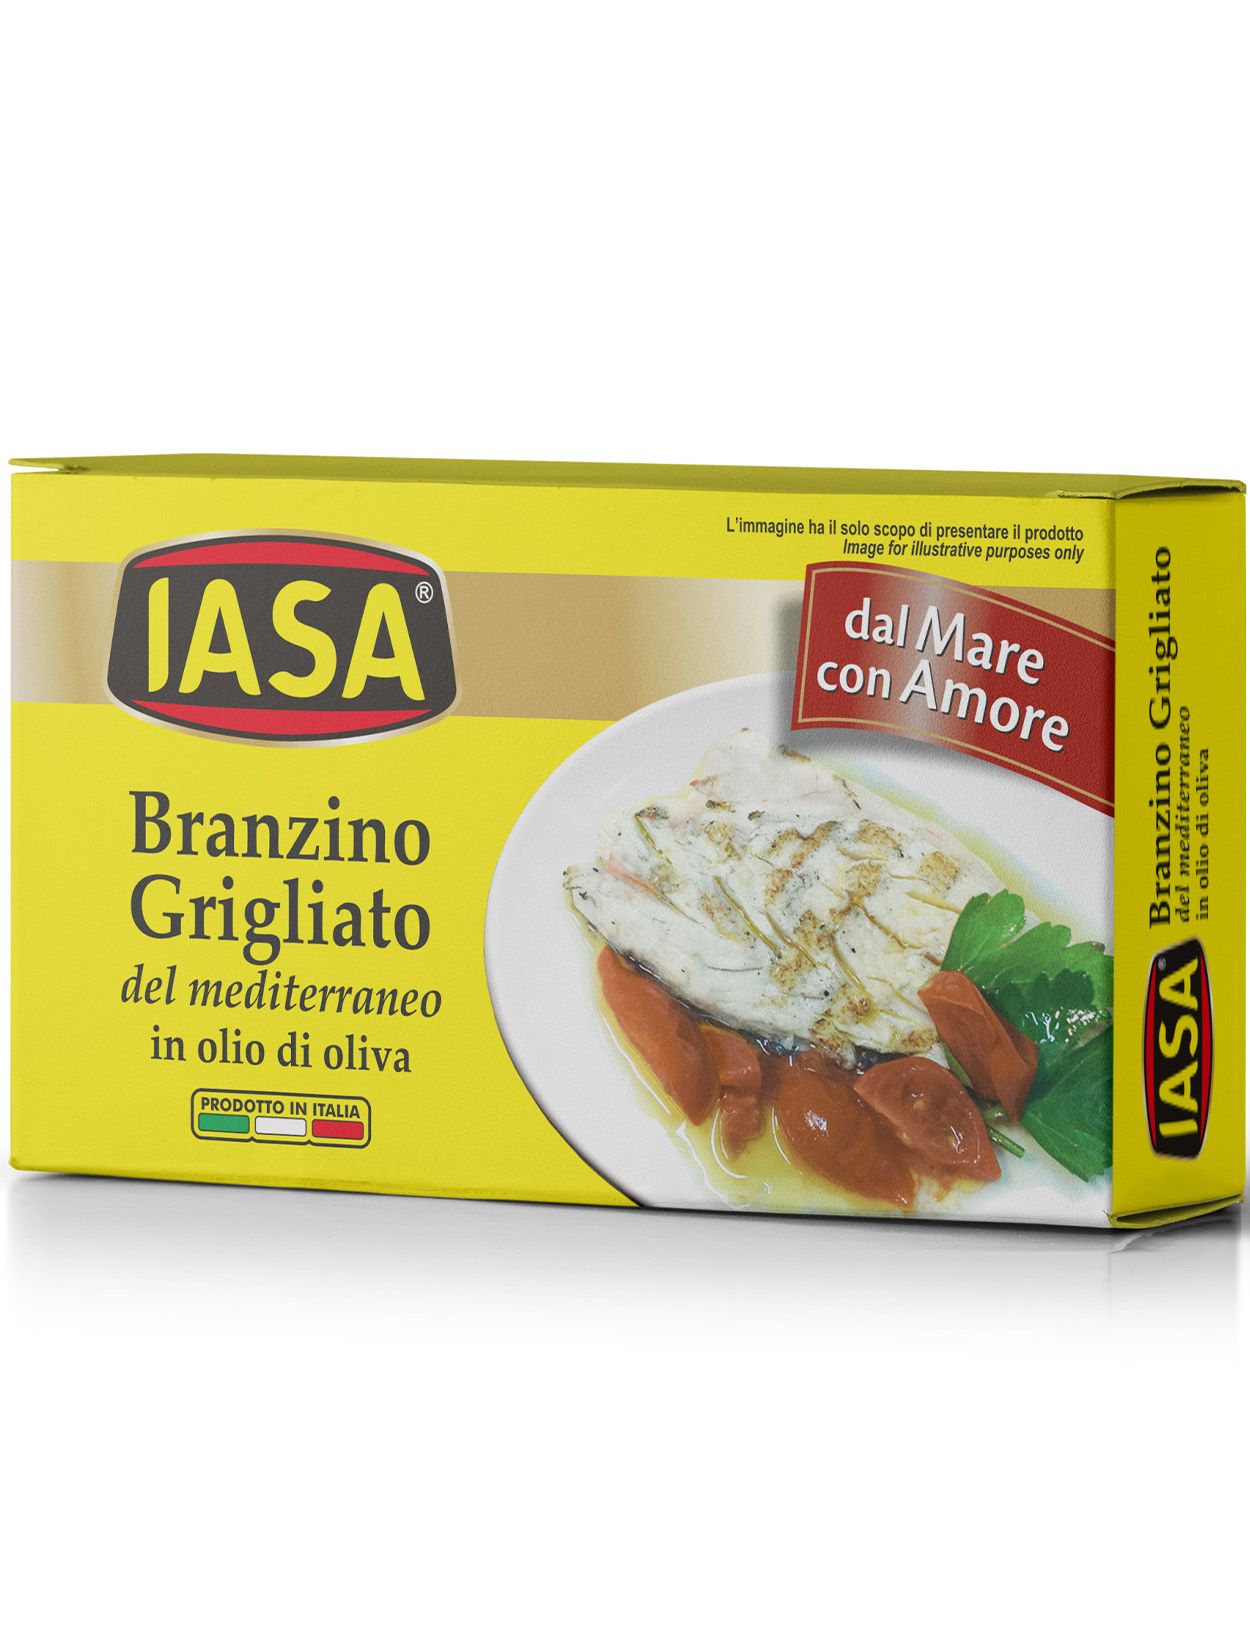 Branzino - Grilled Mediterranean Sea Bass in Olive Oil